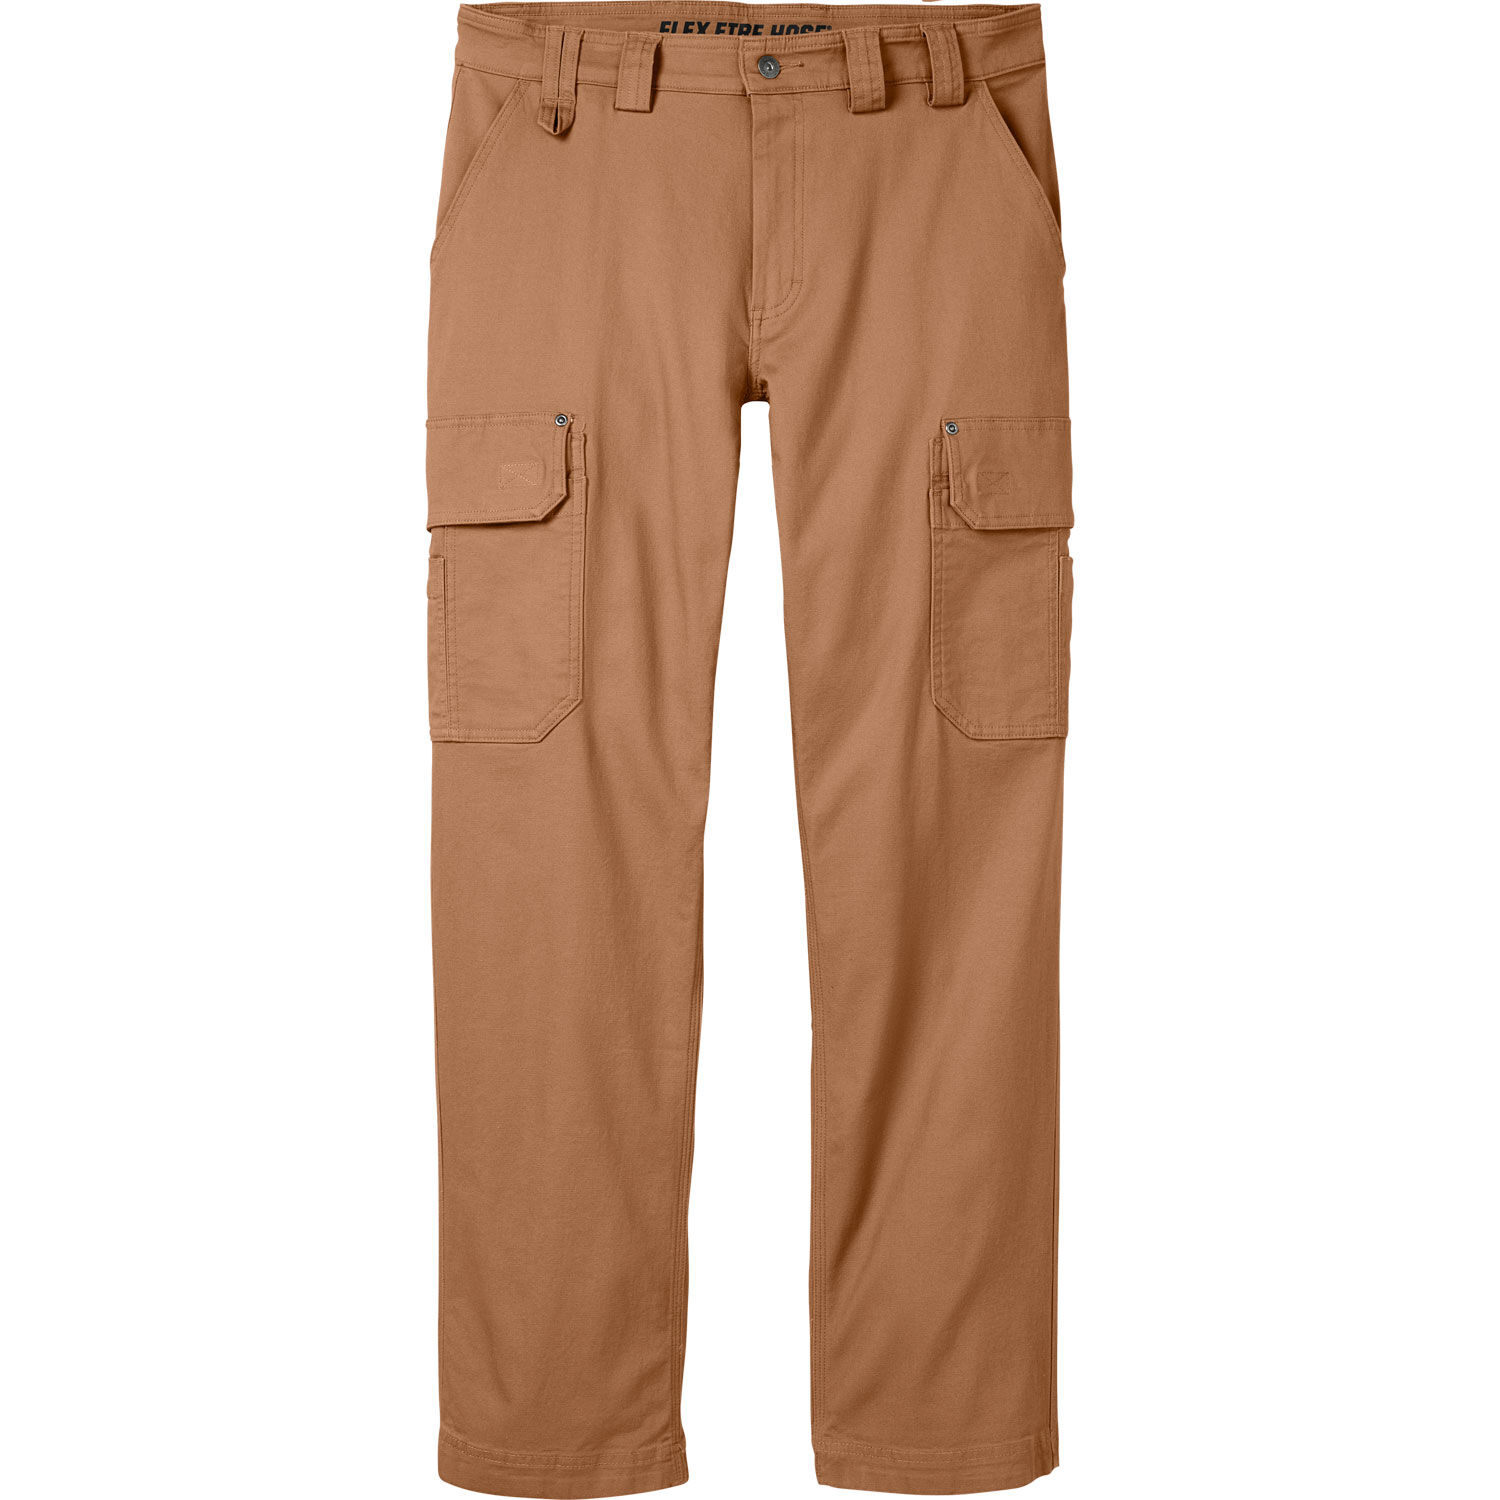 Men Cargo Pants Sale|men's Cargo Pants - Cotton Multi-pocket Work & Sports  Pants